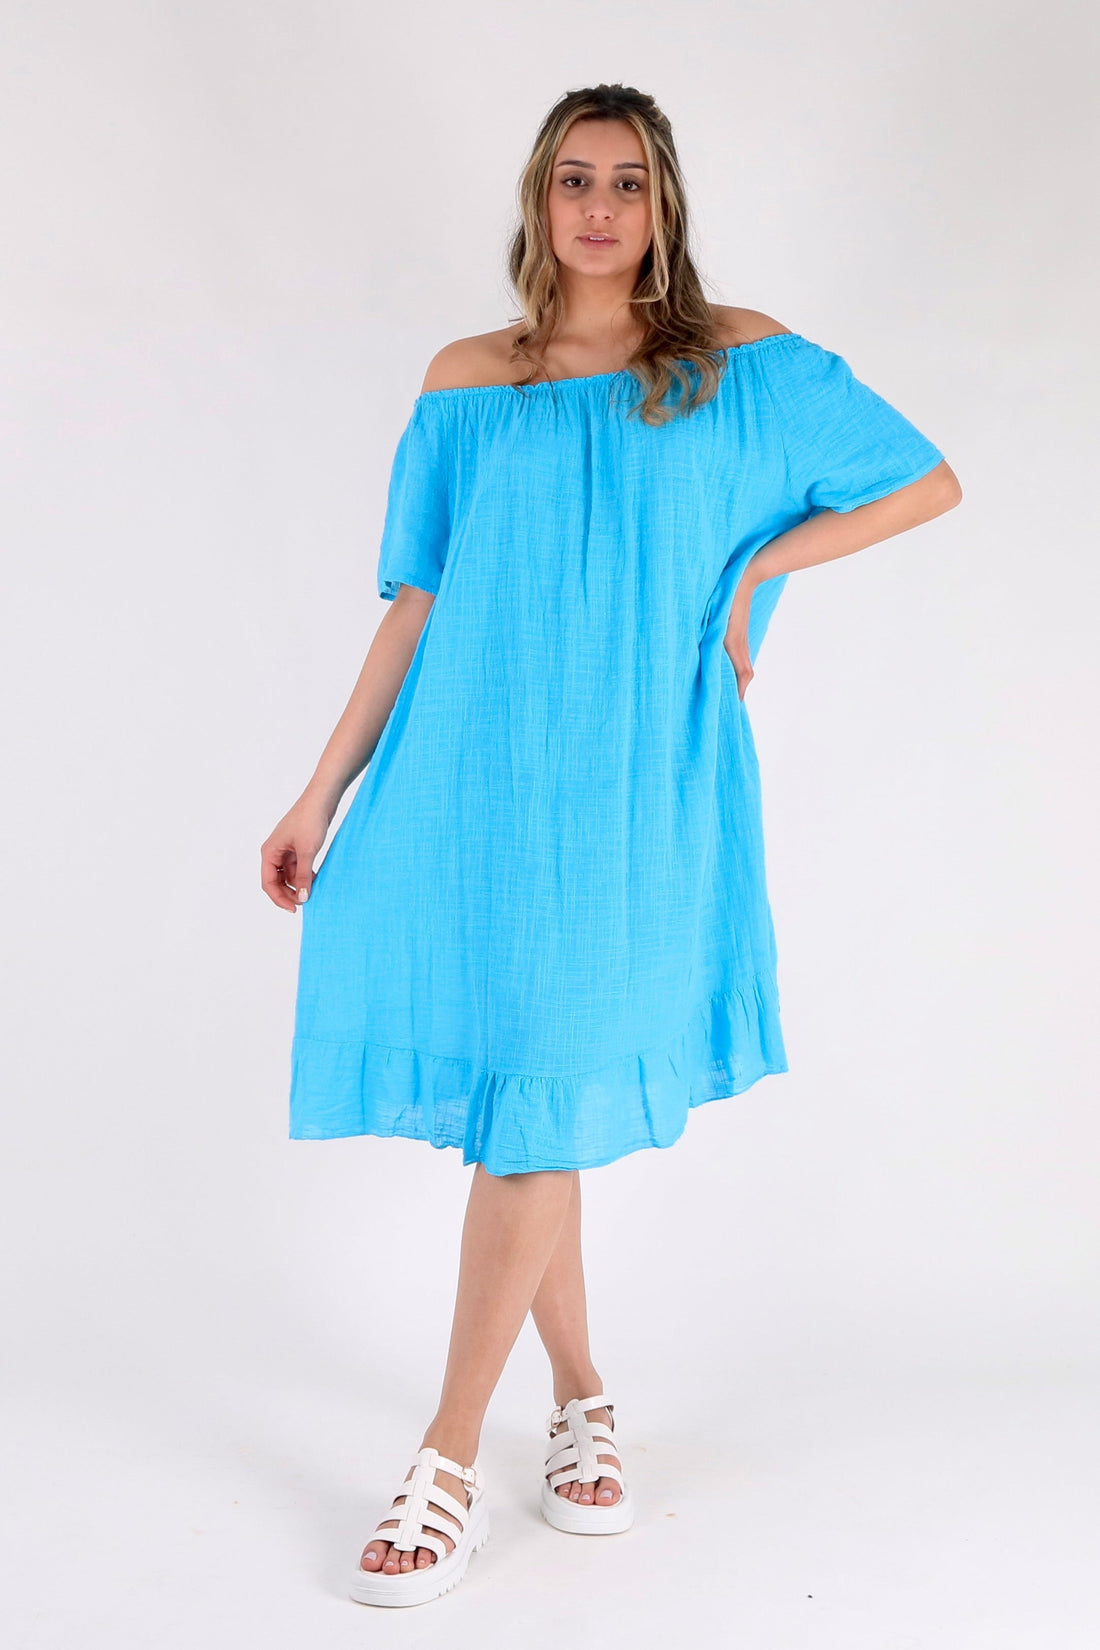 Cheesecloth Beach Dress - Pinstripe